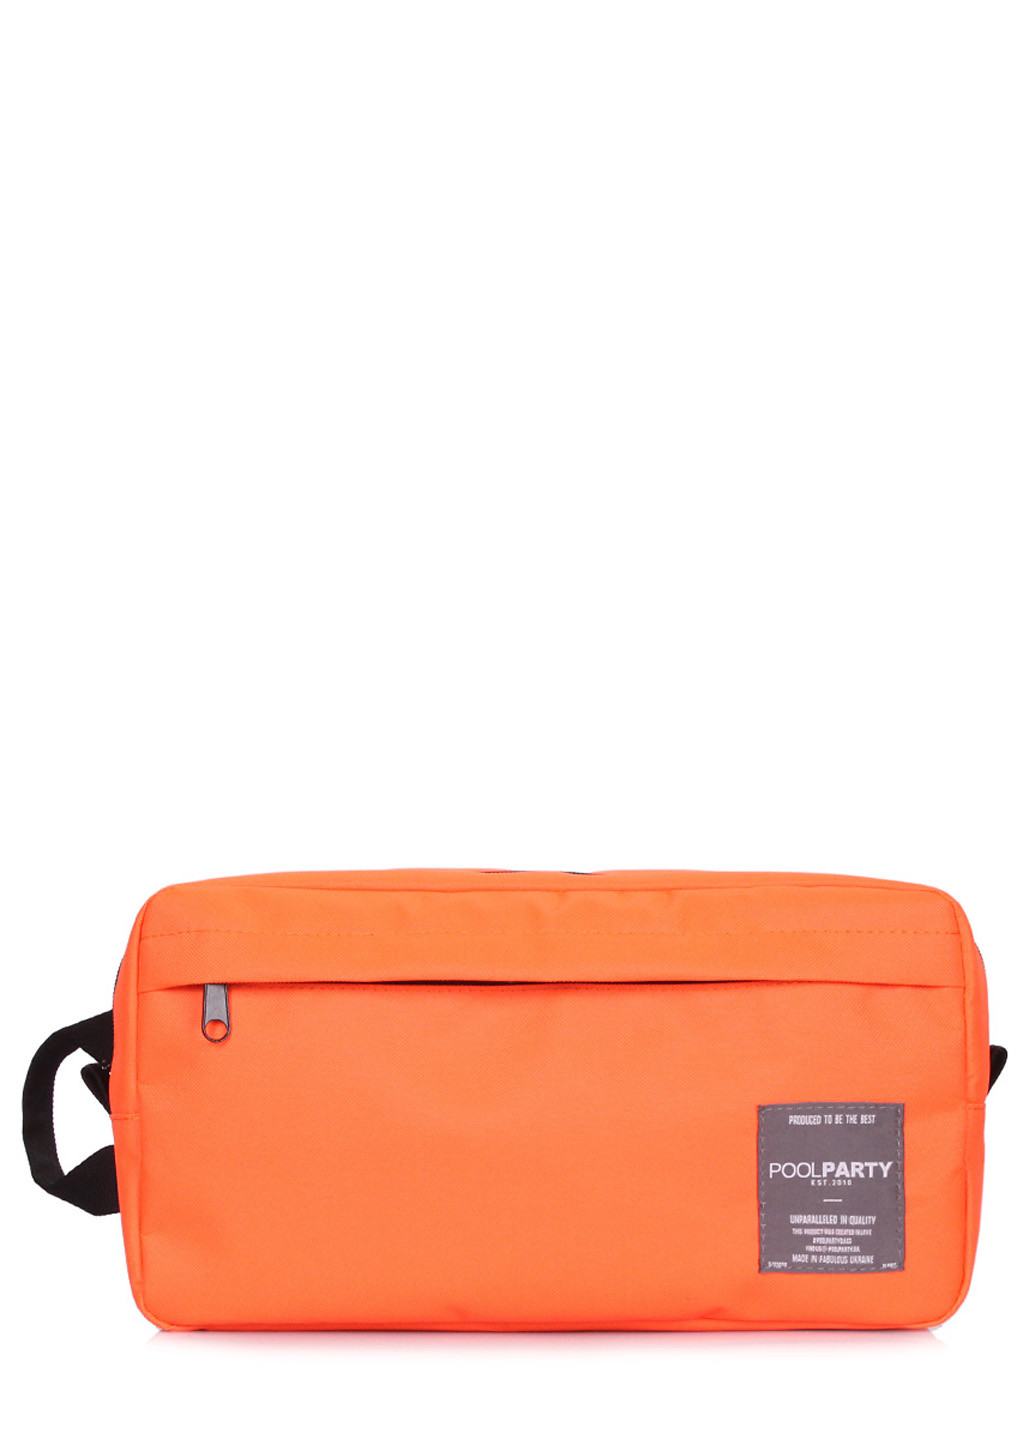 Оранжевый рюкзак-слингпек Jet 33х20х10 см PoolParty (191022380)